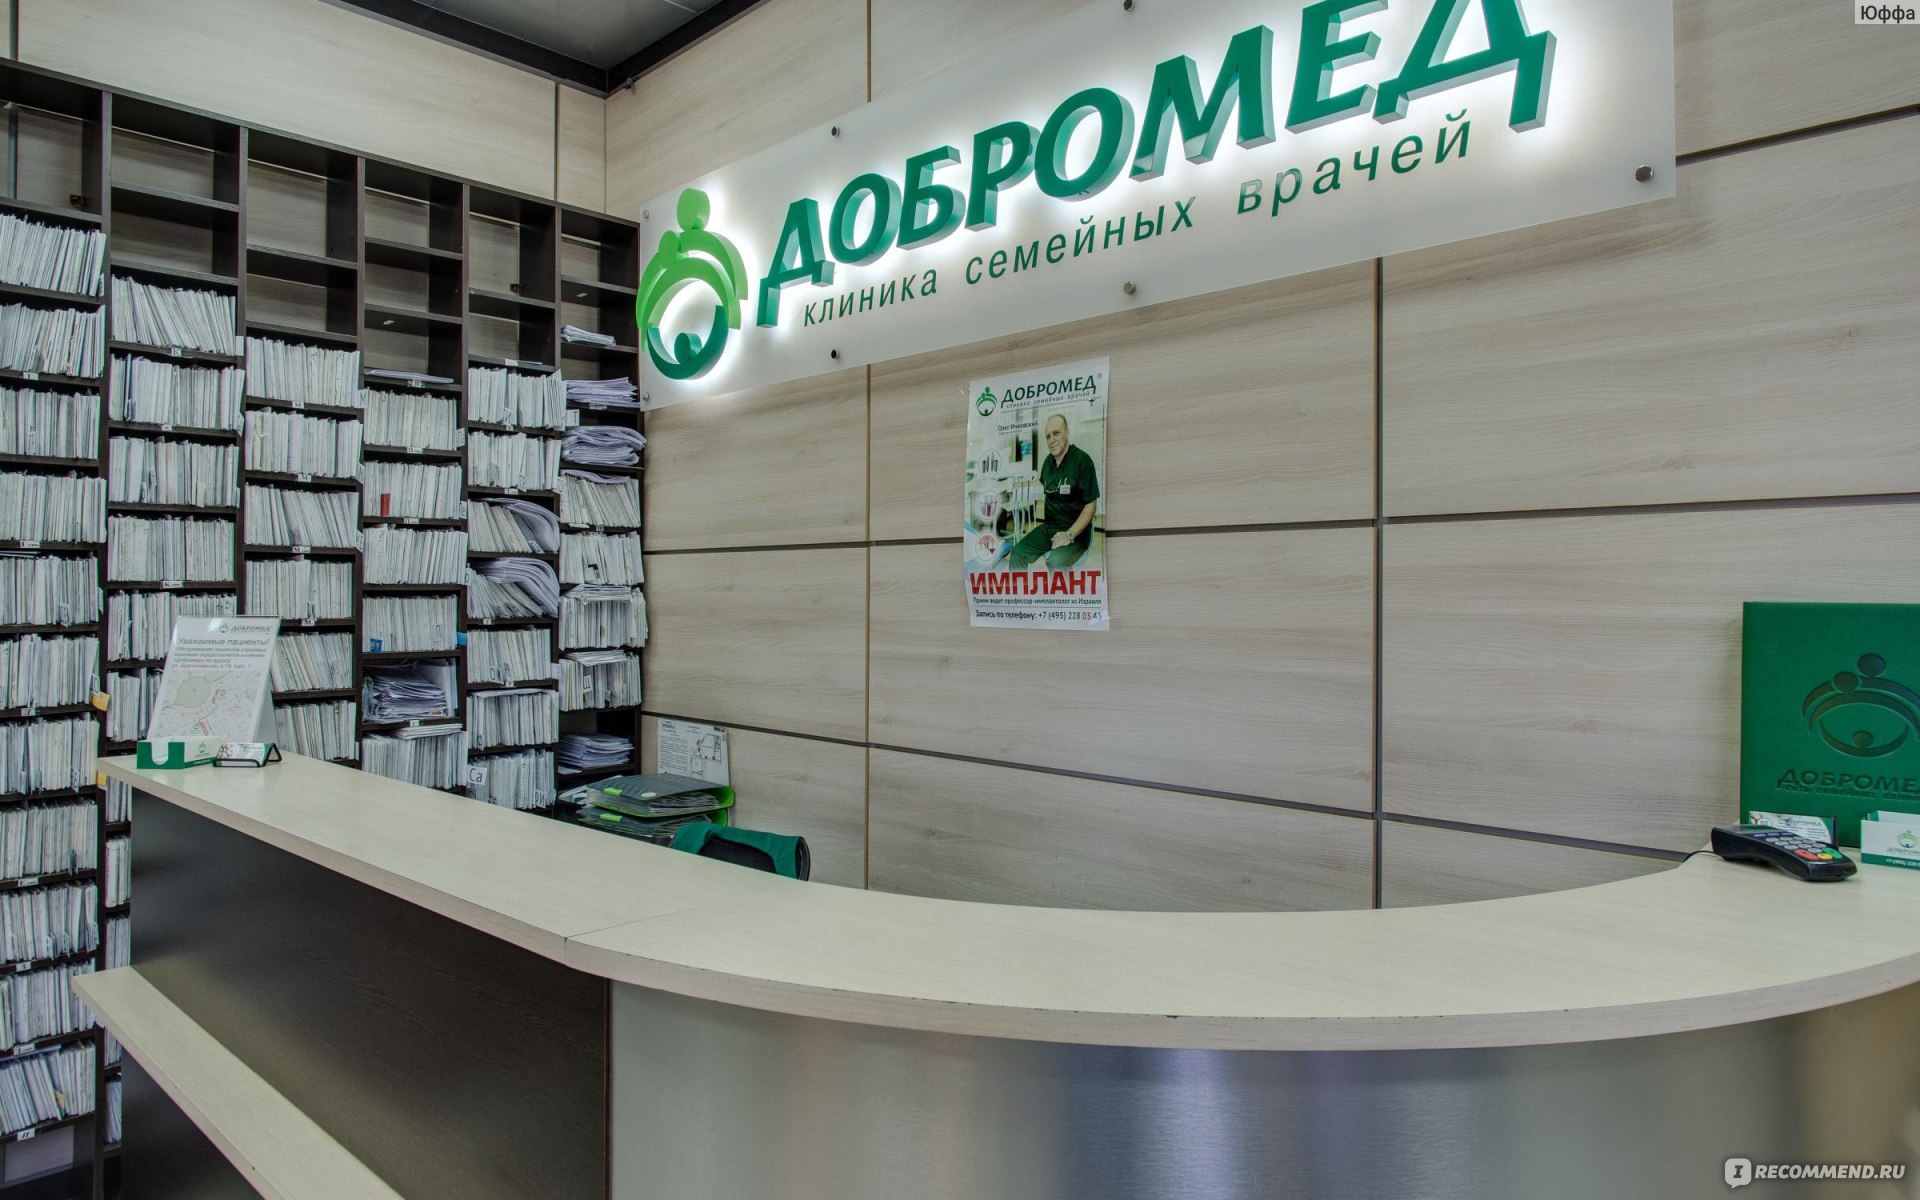 Клиника семейных врачей "Добромед", Москва фото